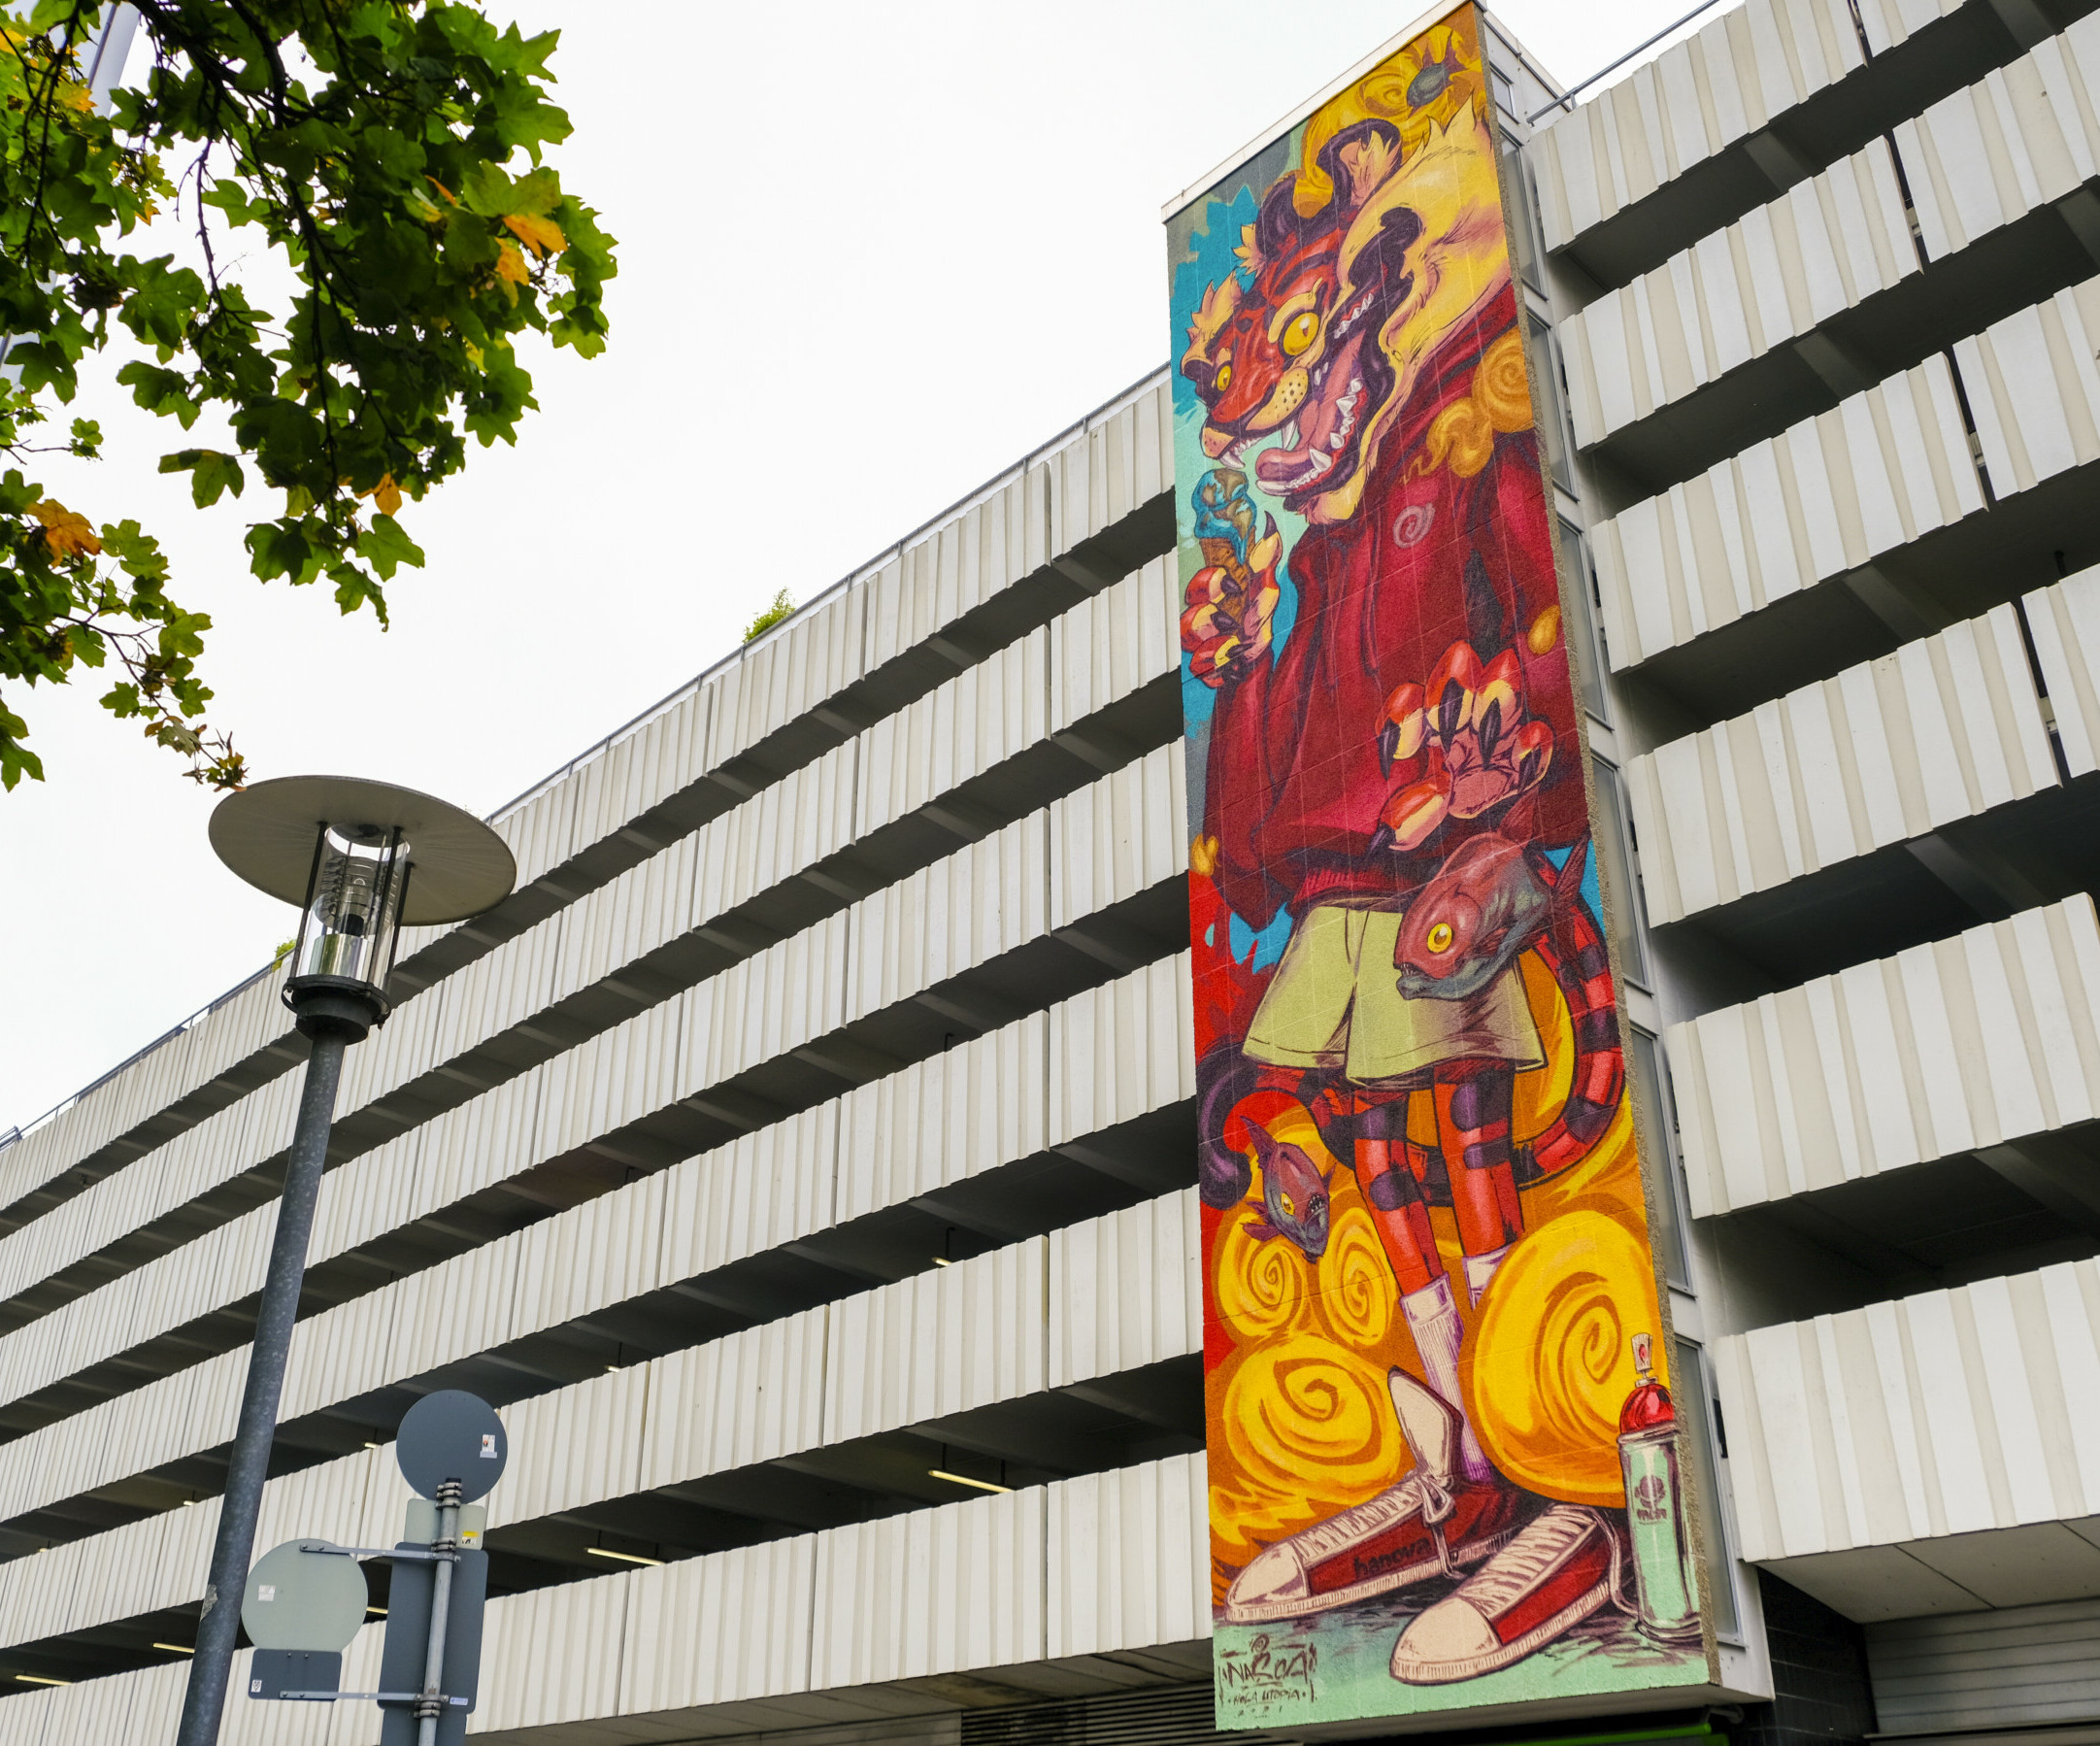 Löwen-Graffiti in Hannover ist Teil der Tour als spannende Familienaktivität